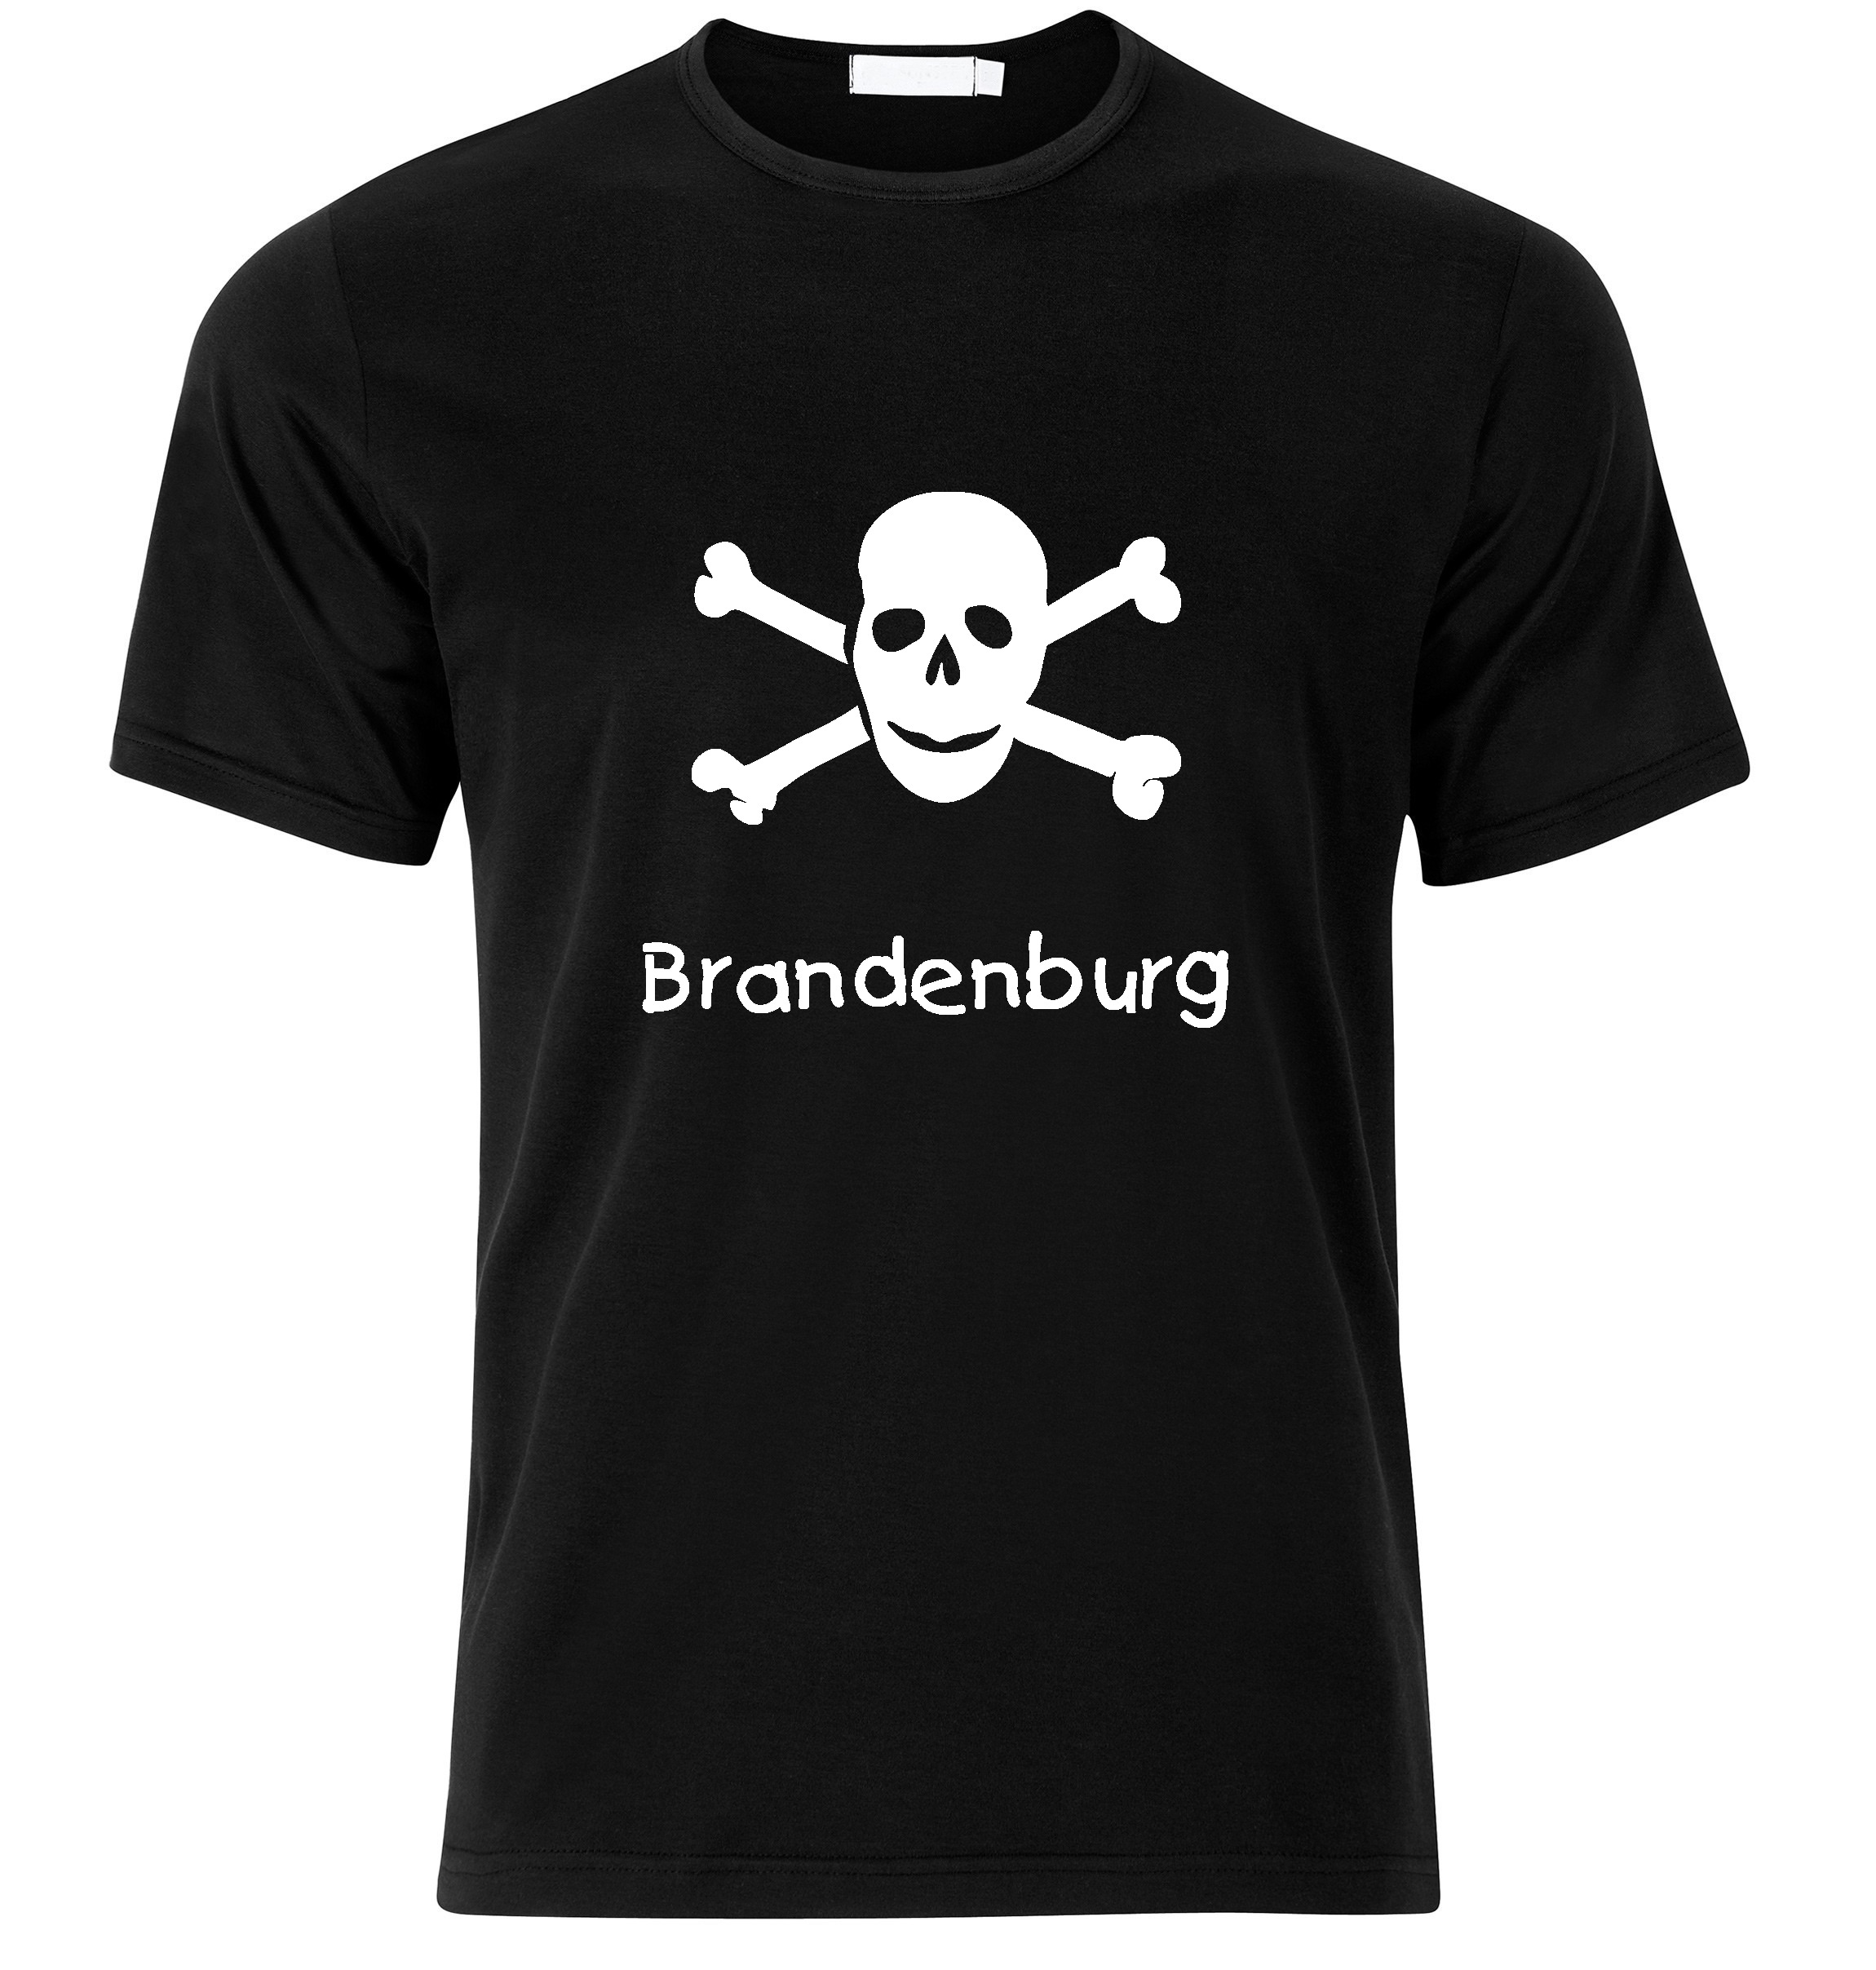 T-Shirt Brandenburg Jolly Roger, Totenkopf